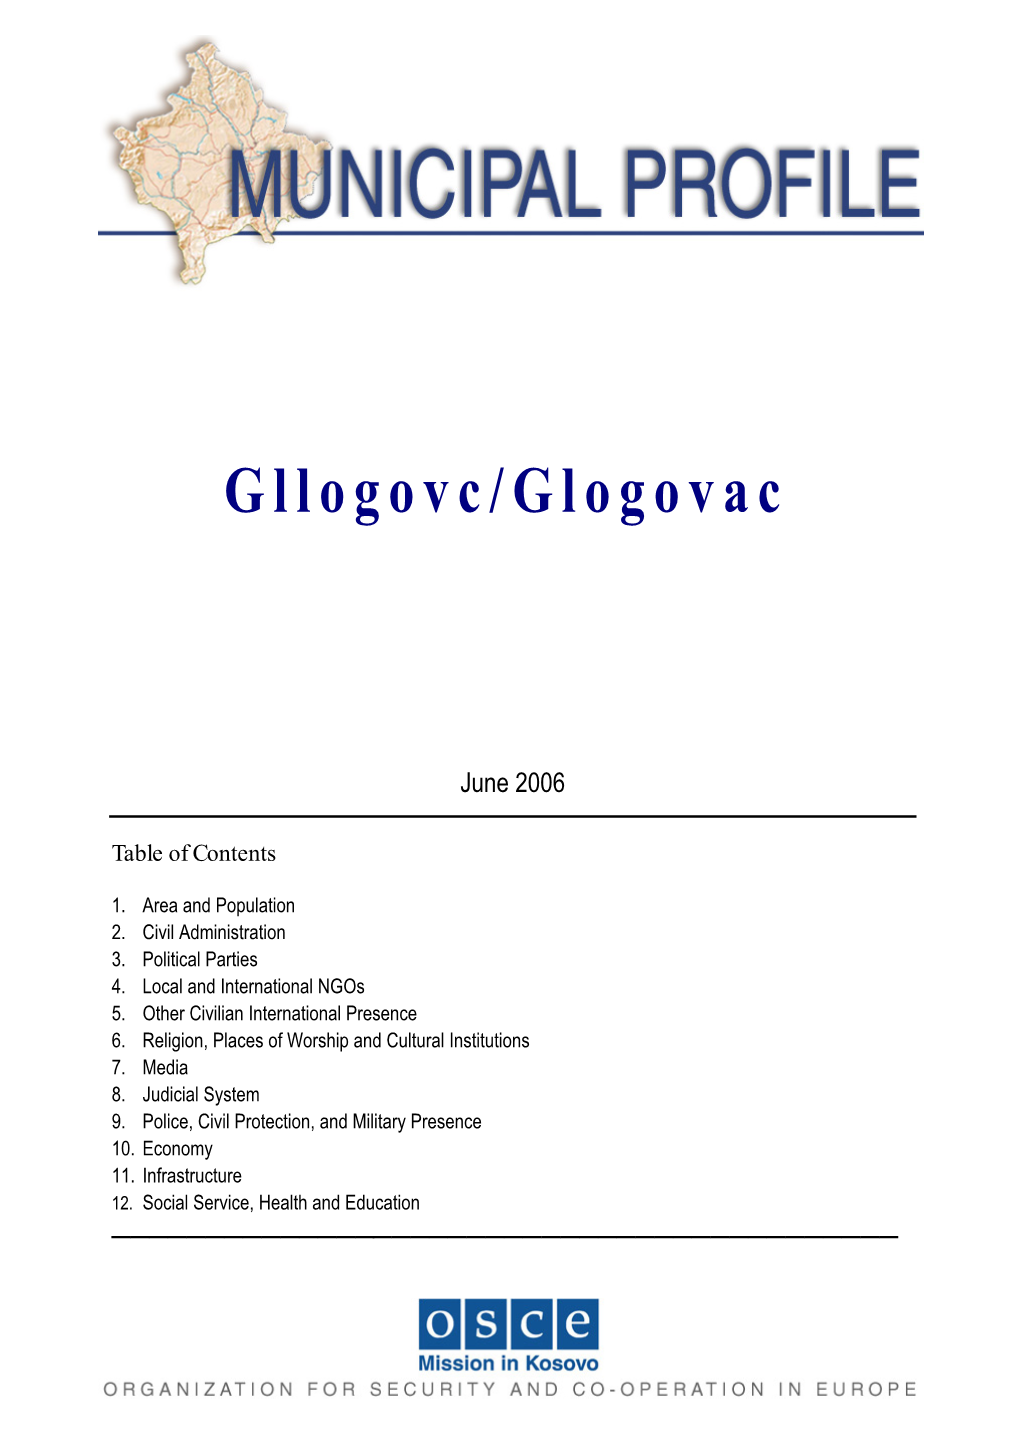 Gllogovc/Glogovac